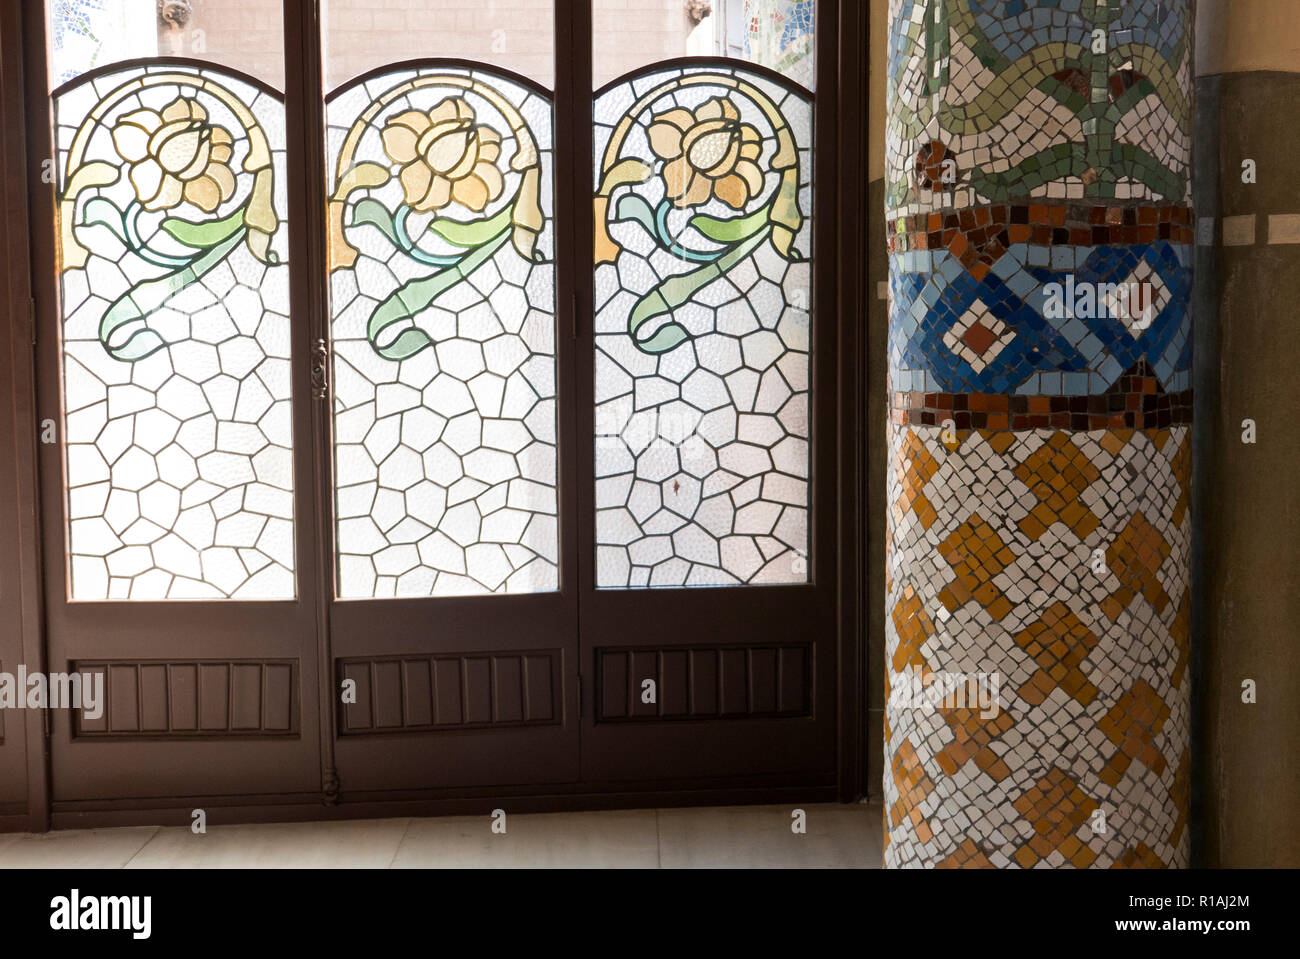 Design fleuri coloré sur la vitre du Palau de la Musica, Barcelone, Espagne Banque D'Images